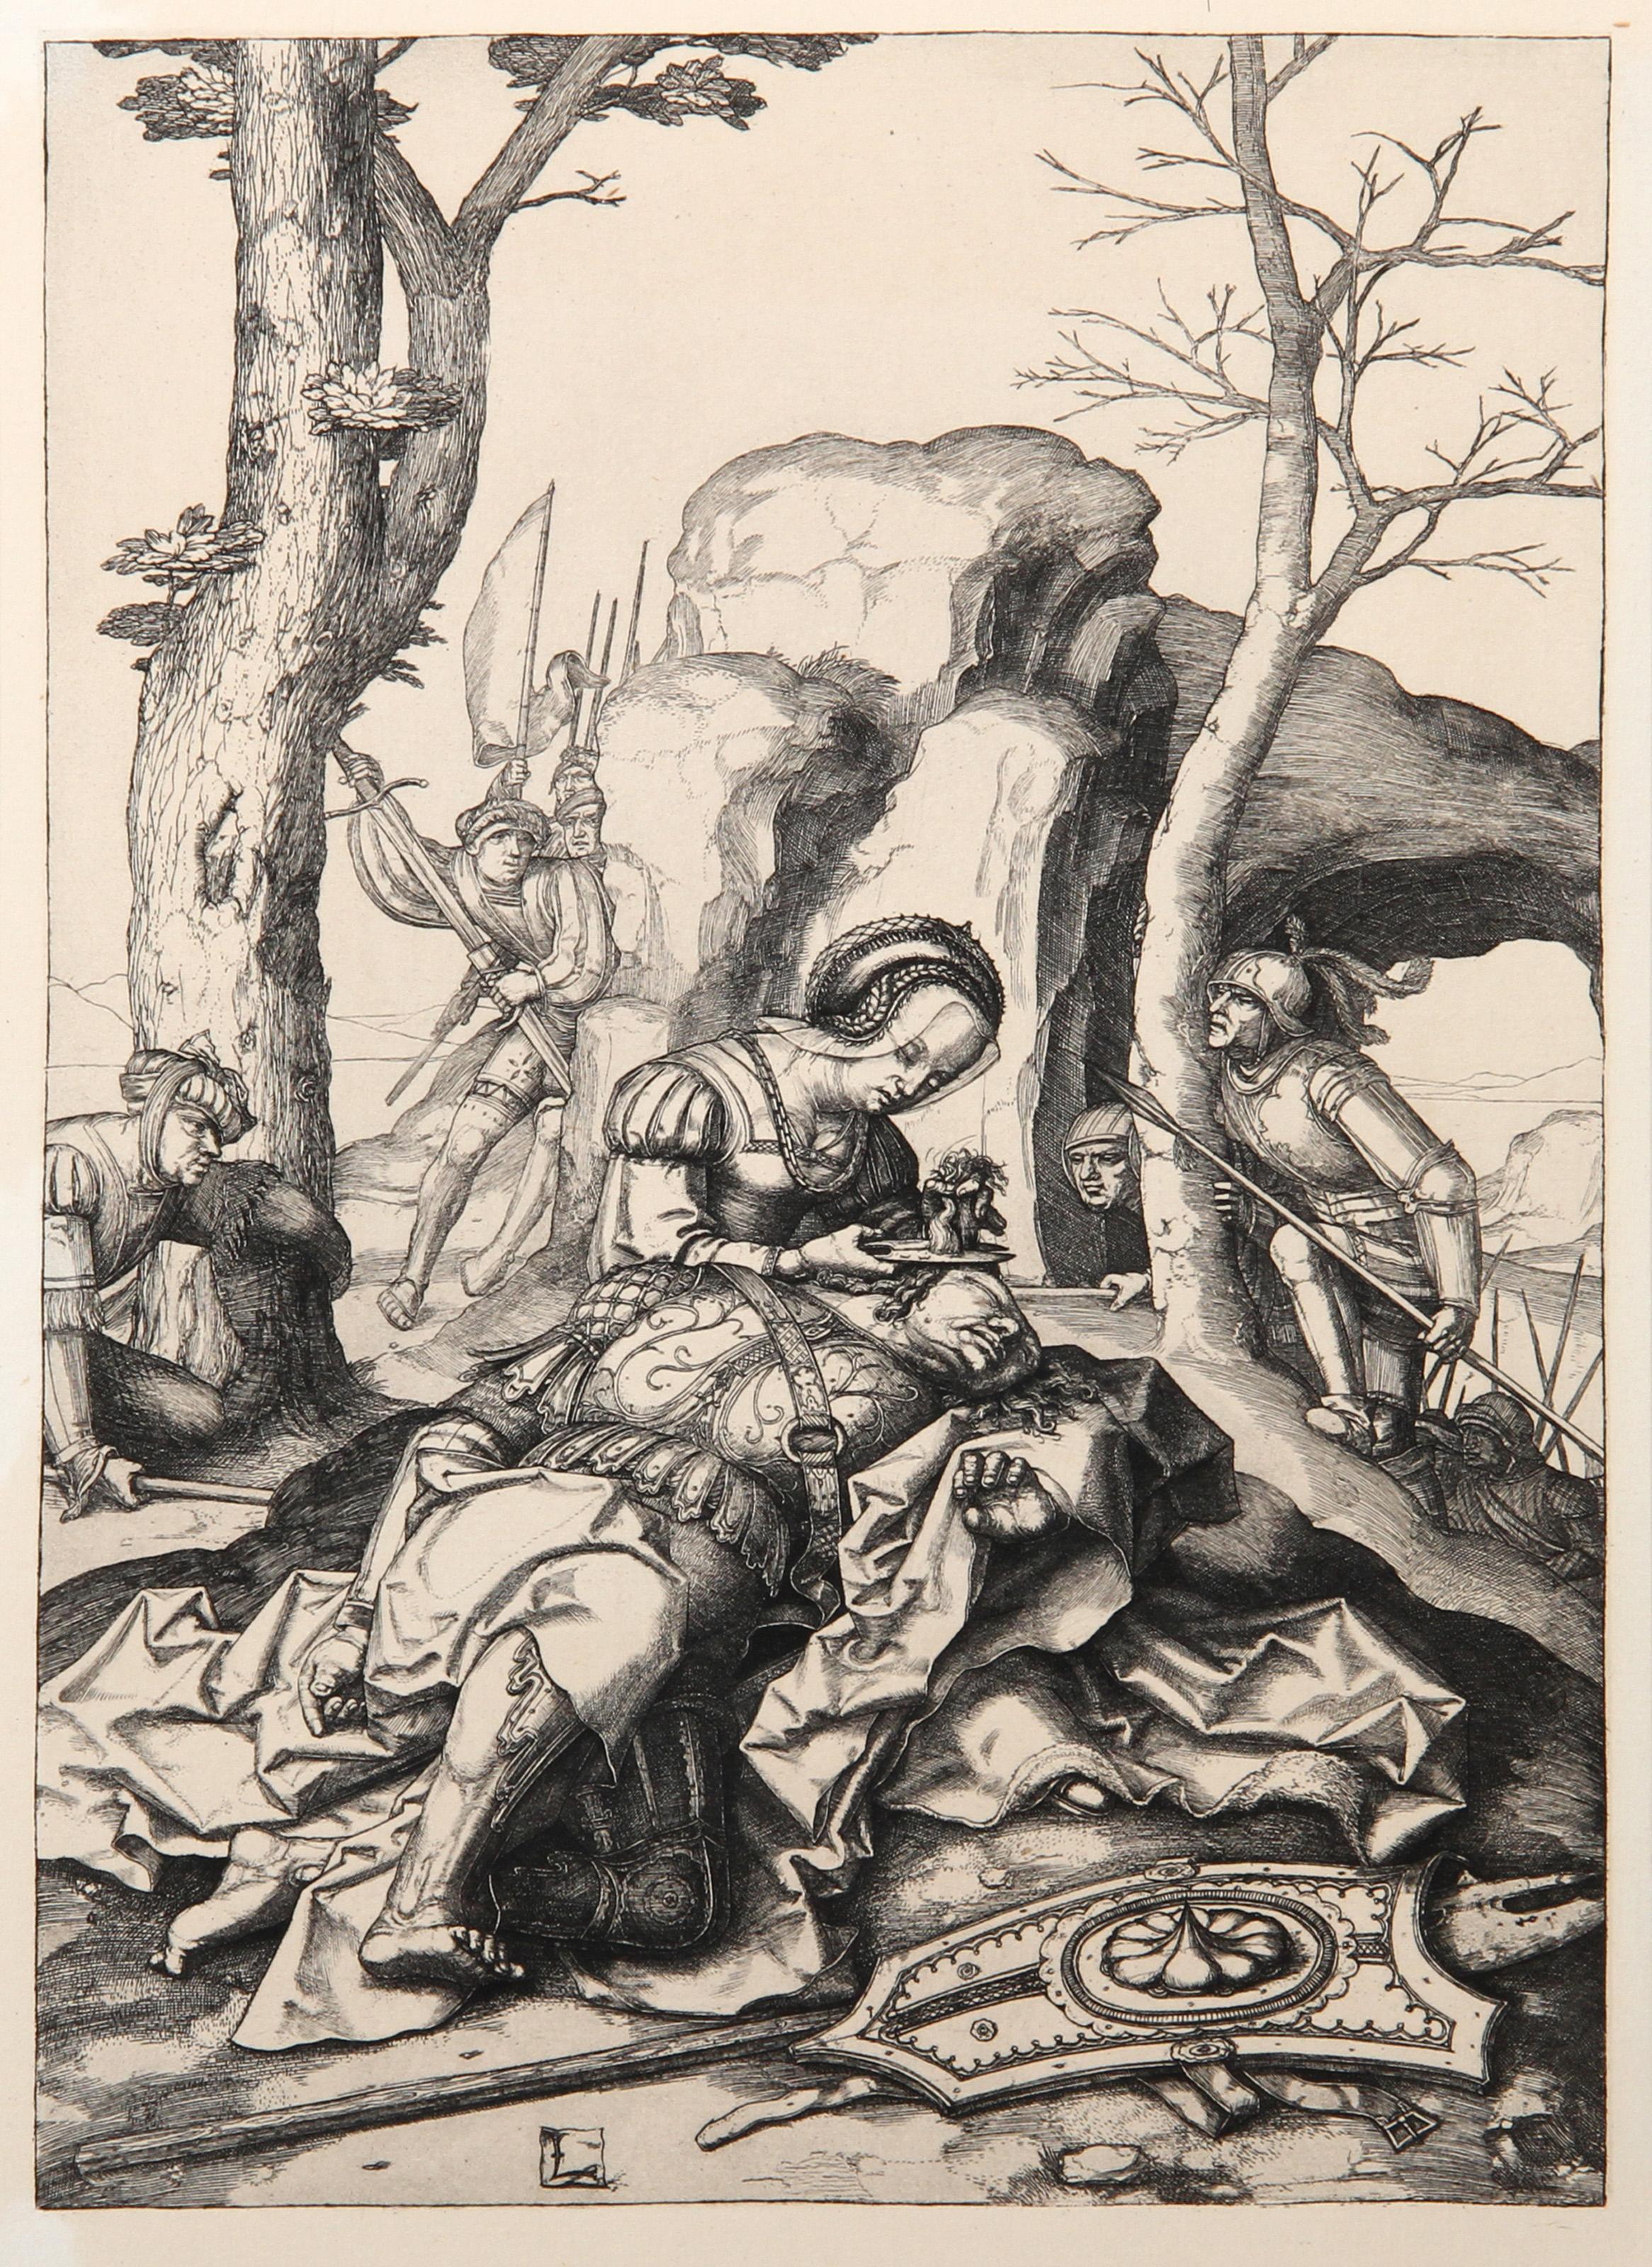 Artist: Lucas van Leyden, After by Amand Durand, Dutch (1494 - 1533) - Dalila coupant les Cheveux de Samson, Year: 1873, Medium: Heliogravure, Size: 12  x 8.5 in. (30.48  x 21.59 cm), Printer: Amand Durand, Description: French Engraver and painter